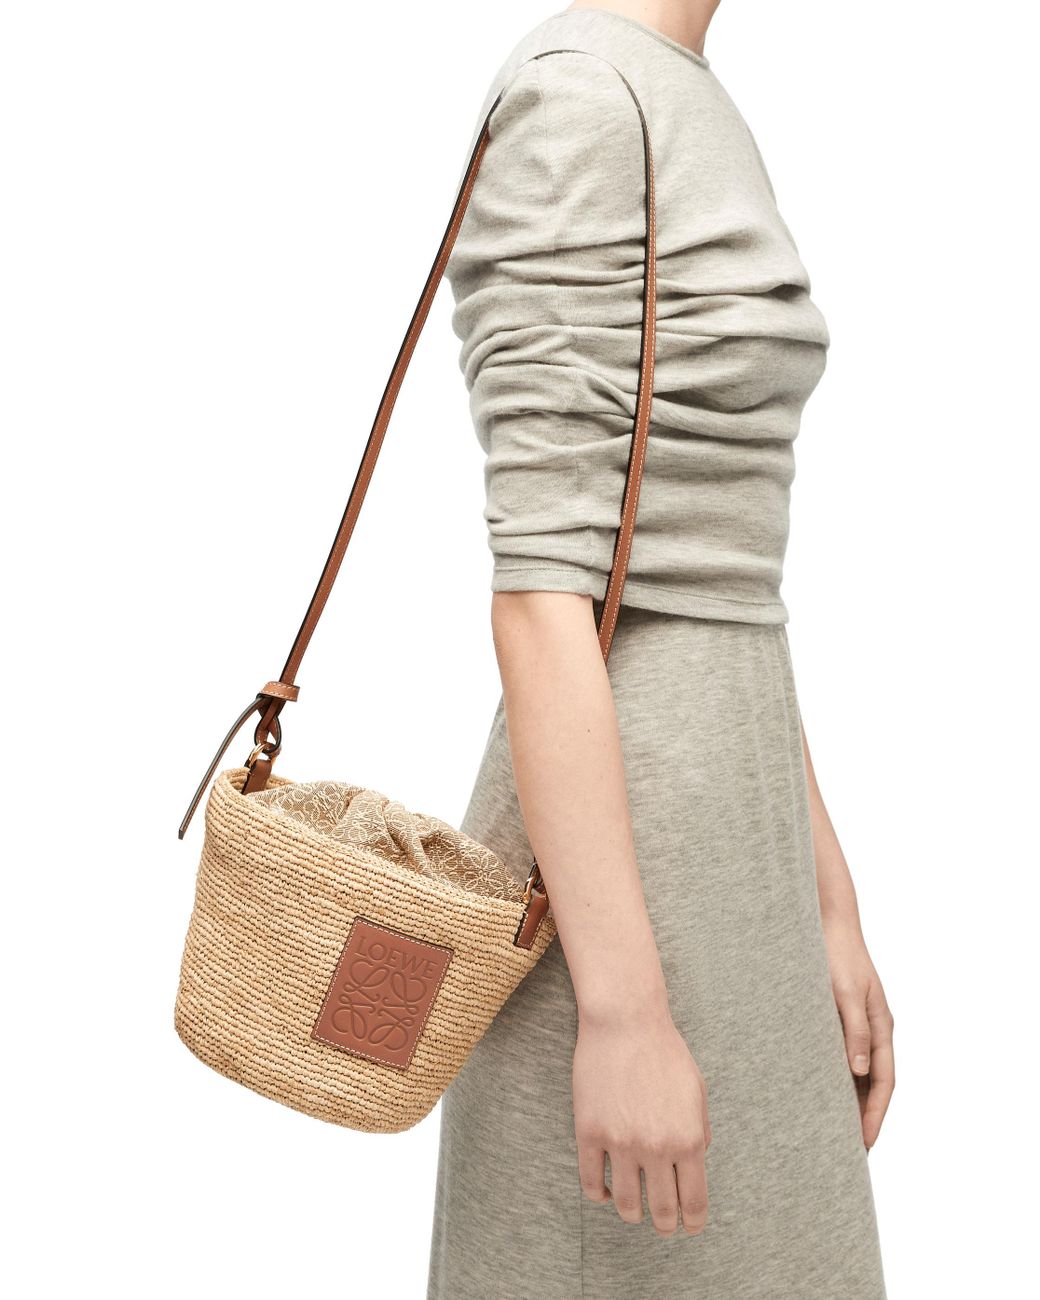 LOEWE Basket Bag Raffia/Leather Natural/Tan Mini Bag New Japan